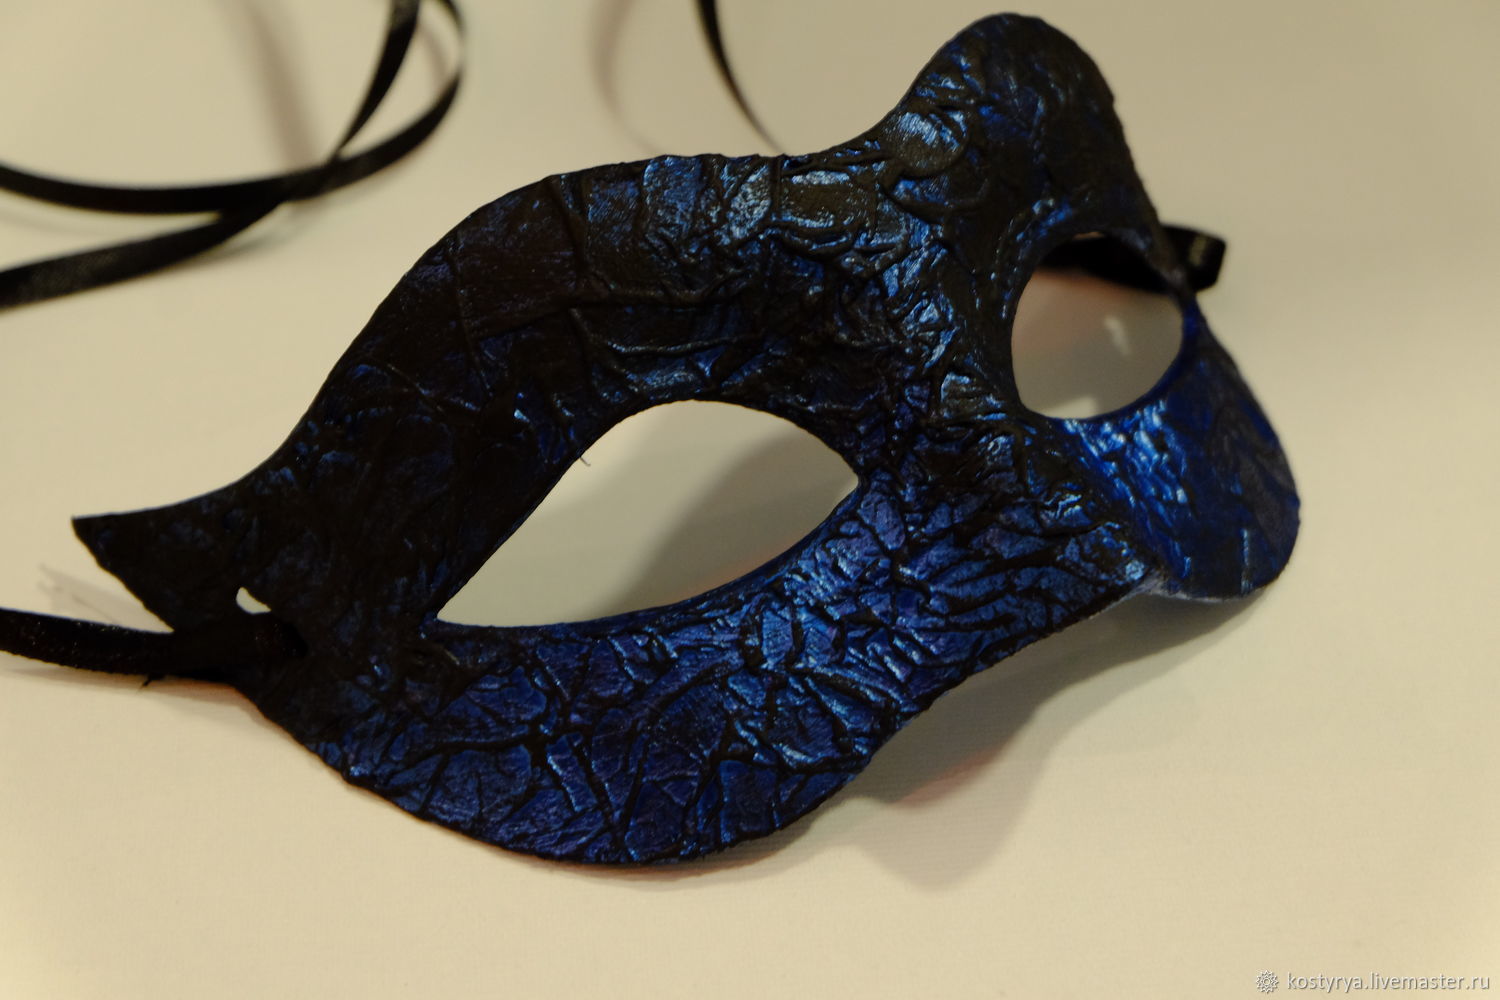 Красная маска синяя маска. Маска карнавальная черная. Мужская карнавальная маска. Маска на глаза карнавальная. Маска "синяя".